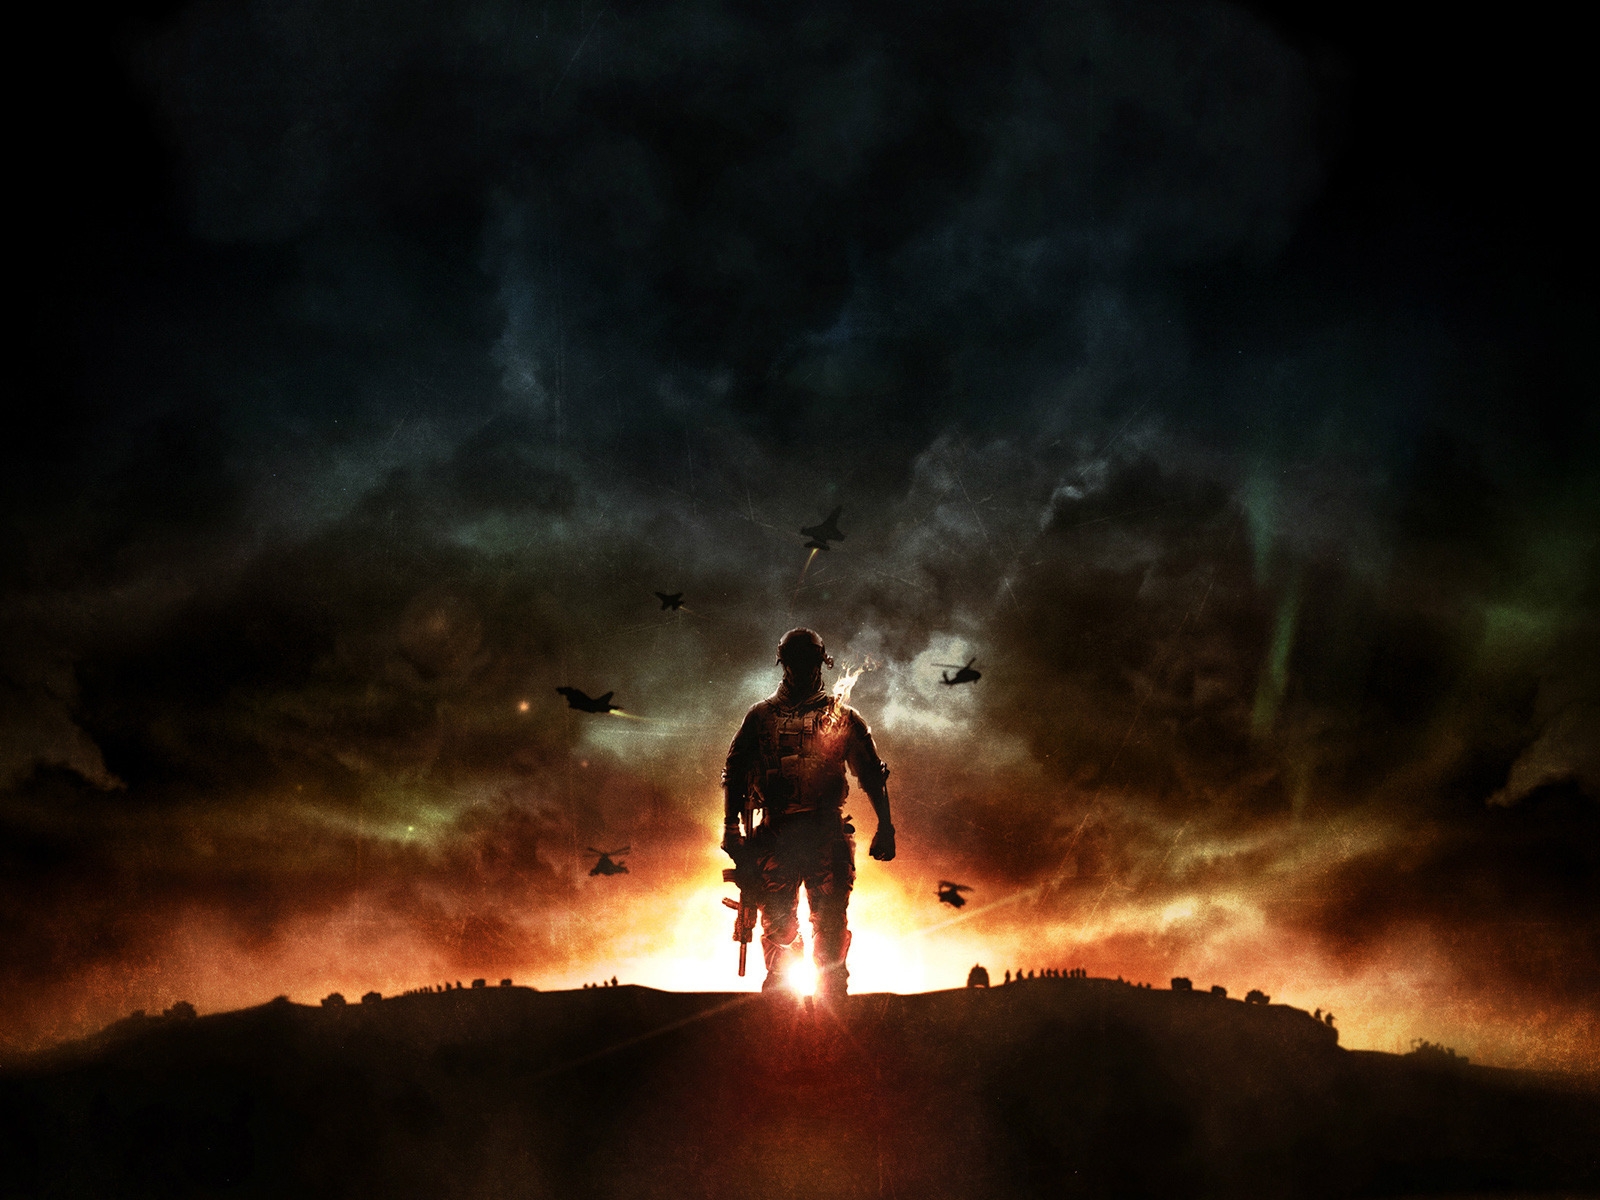 Battlefield 4 Sunset War for 1600 x 1200 resolution